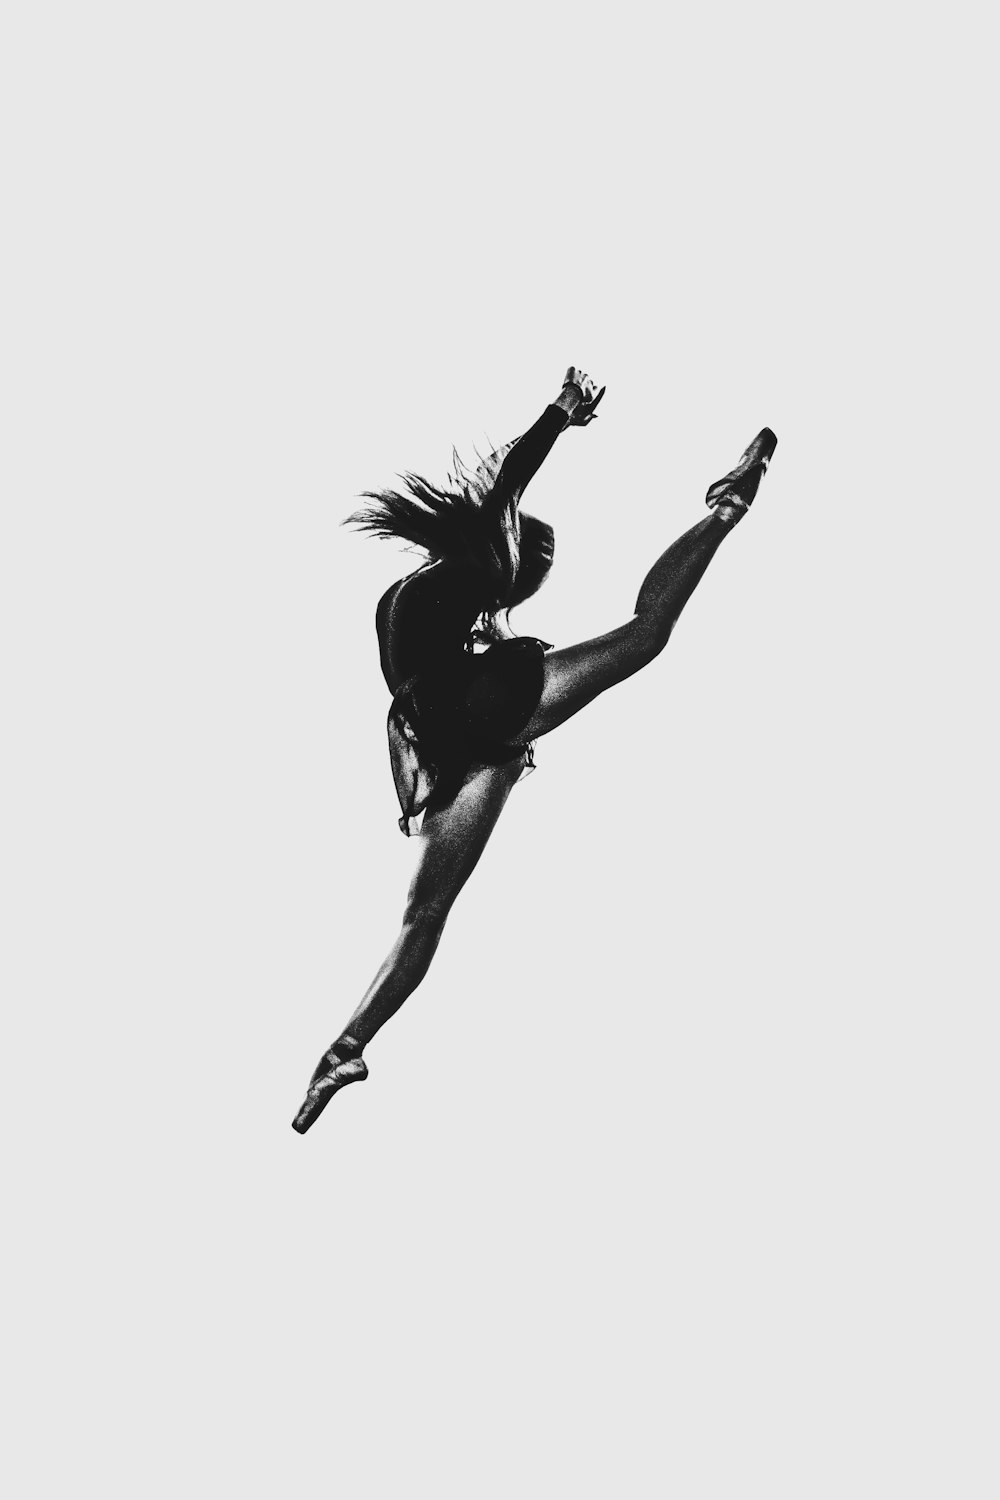 Black Ballerina Pictures | Download Free Images on Unsplash